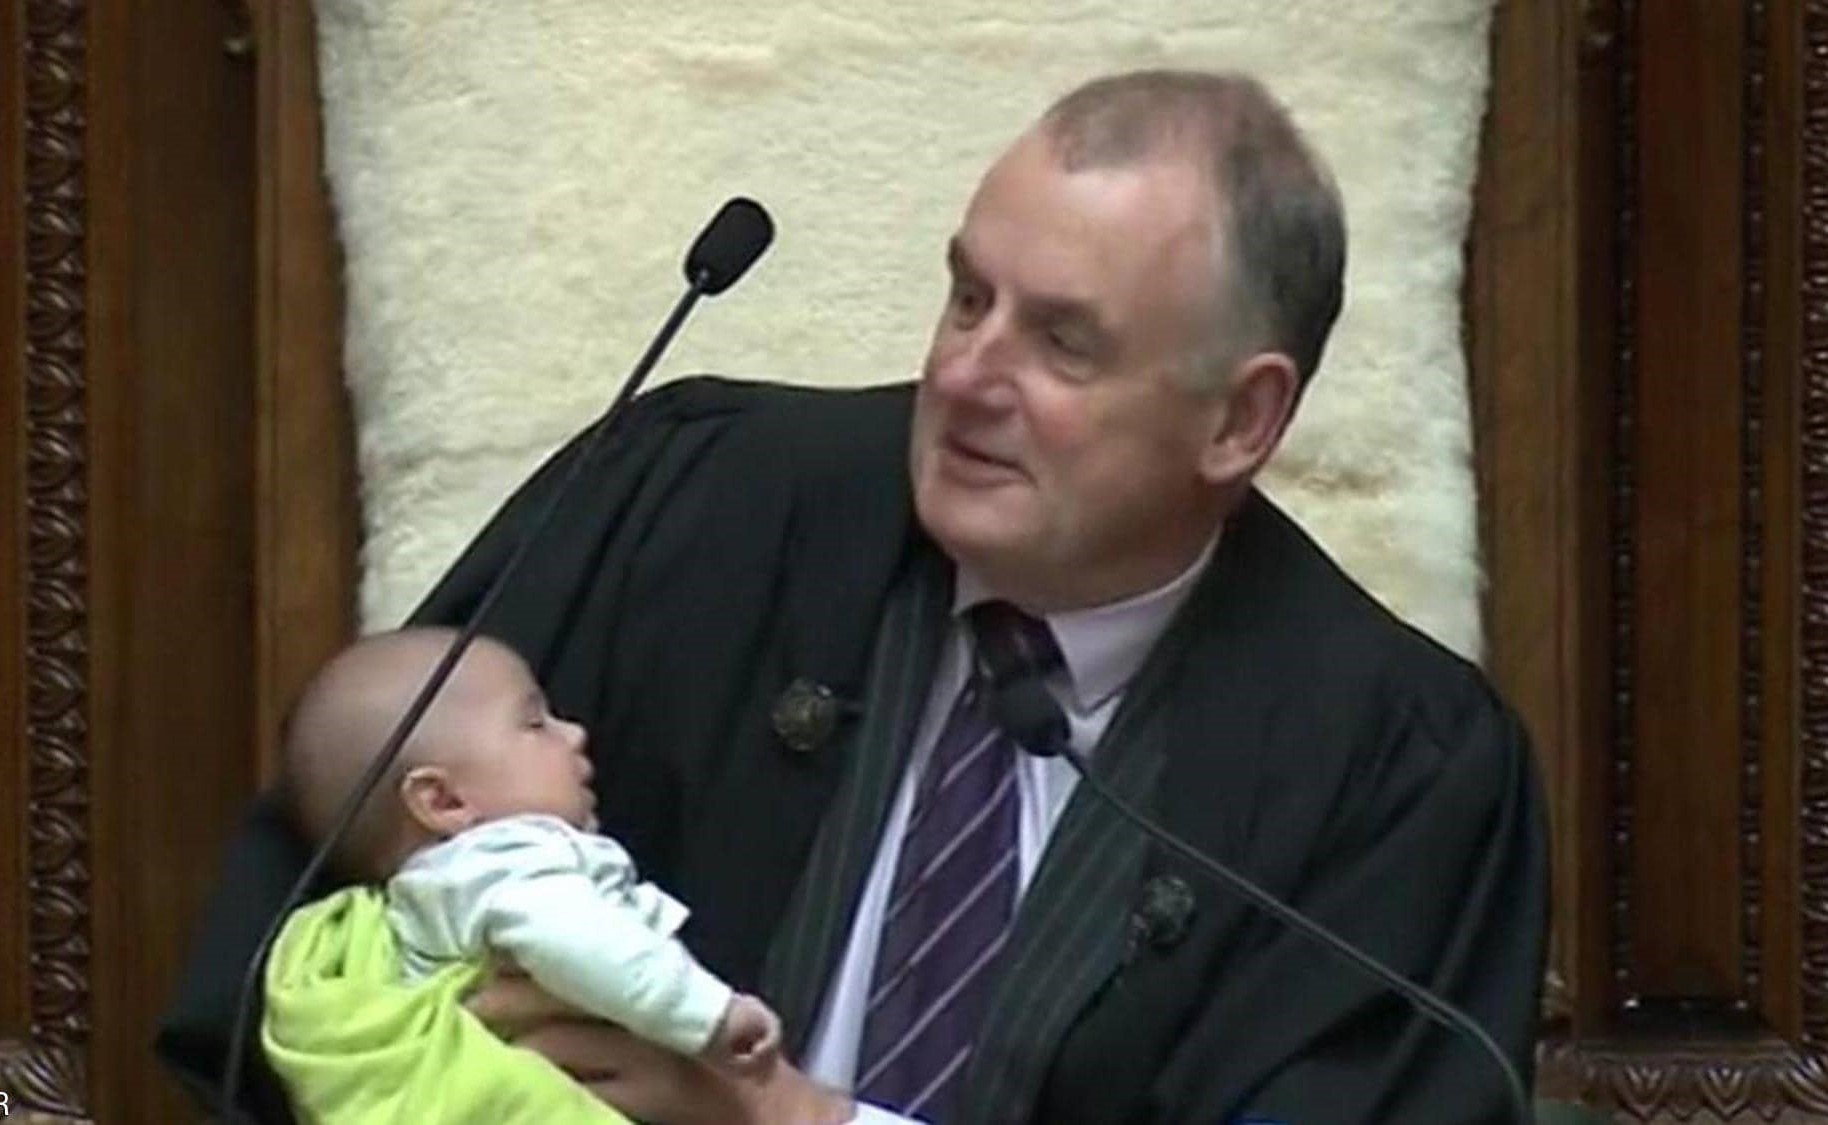 بالفيديو.. رئيس برلمان نيوزيلندا يرضع طفلا خلال جلسة نقاش